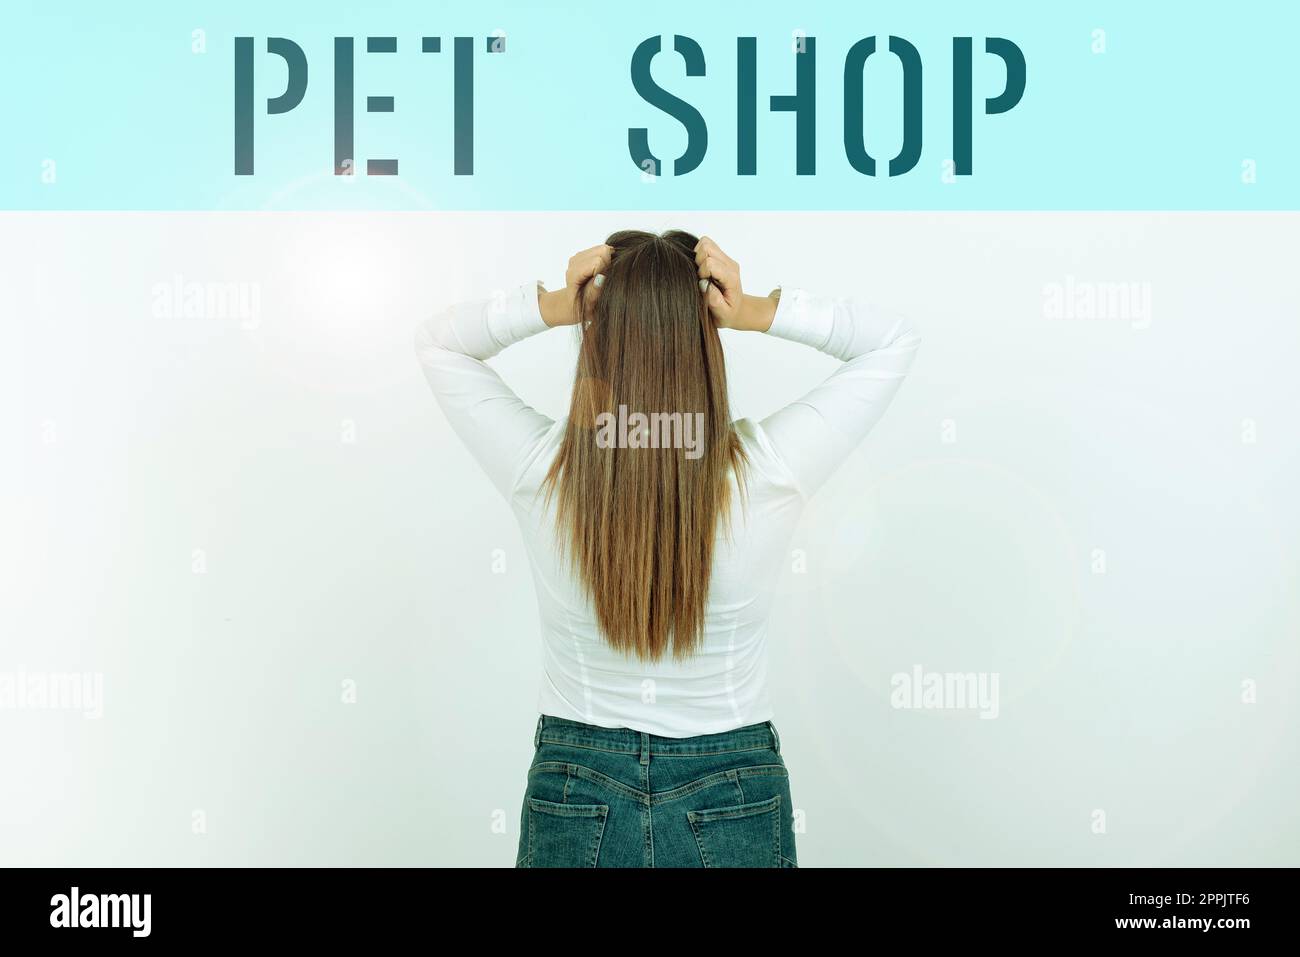 Textzeichen mit Haustierhandlung. Konzeptfoto-Einzelhandelsgeschäft, das verschiedene Arten von Tieren an die Öffentlichkeit verkauft Stockfoto